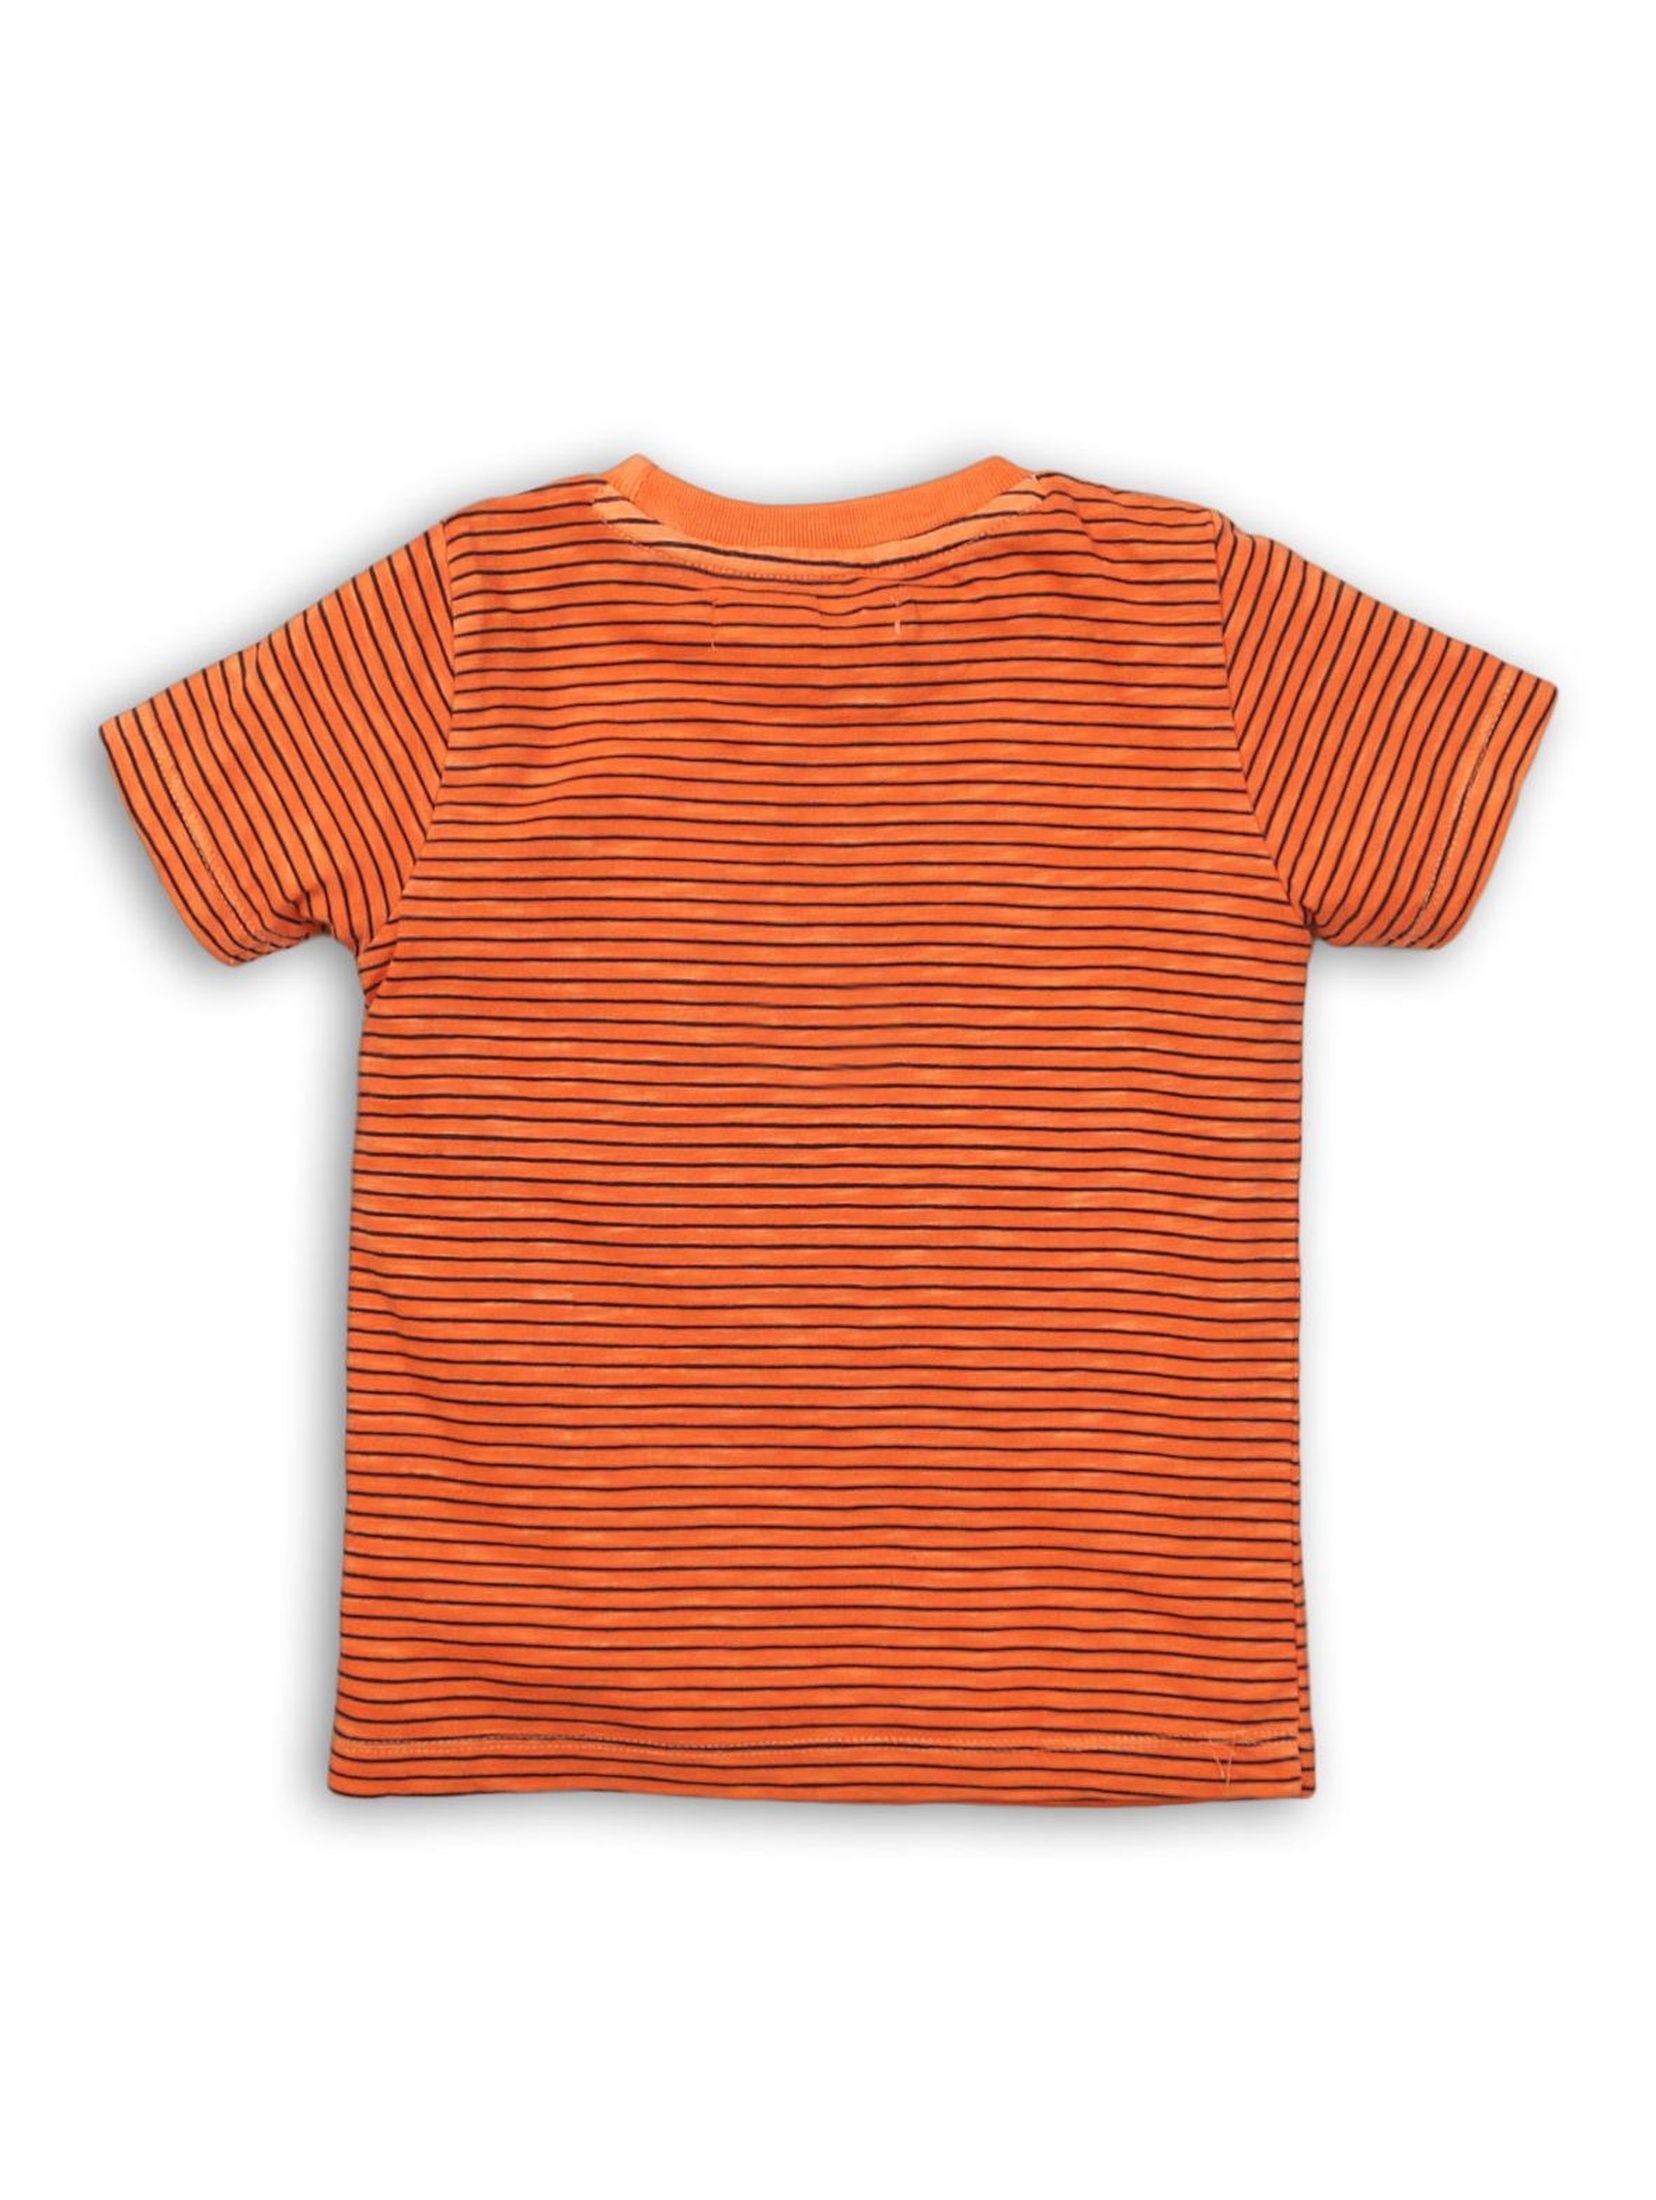 Pomarańczowy t-shirt w paski - niemowlęcy